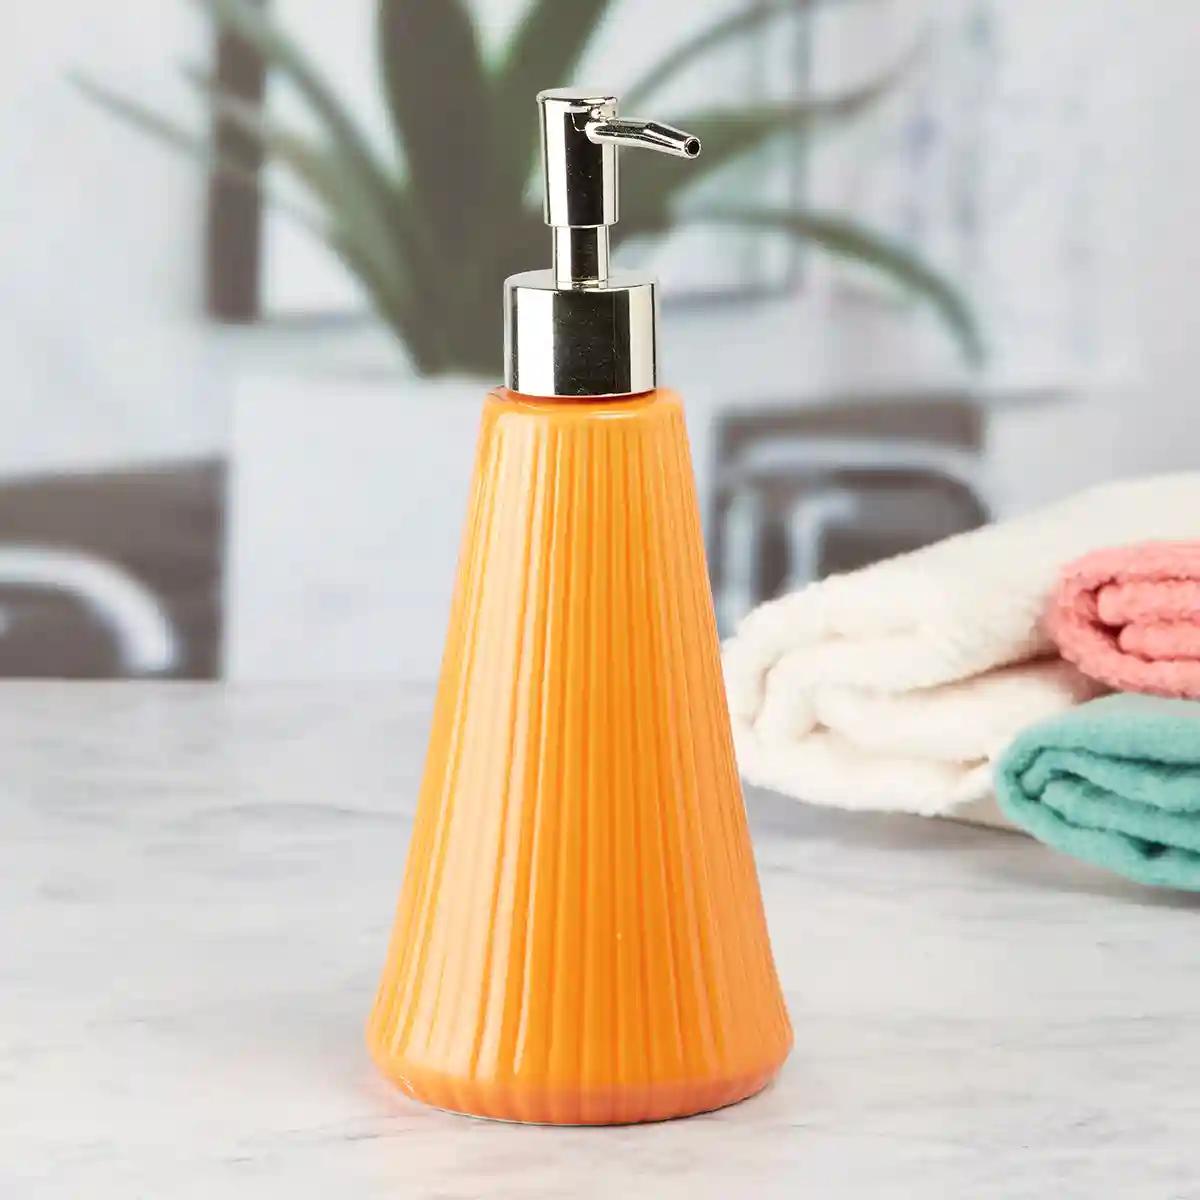 Kookee Ceramic Soap Dispenser for Bathroom handwash, refillable pump bottle for Kitchen hand wash basin, Set of 2 - Orange (8054)